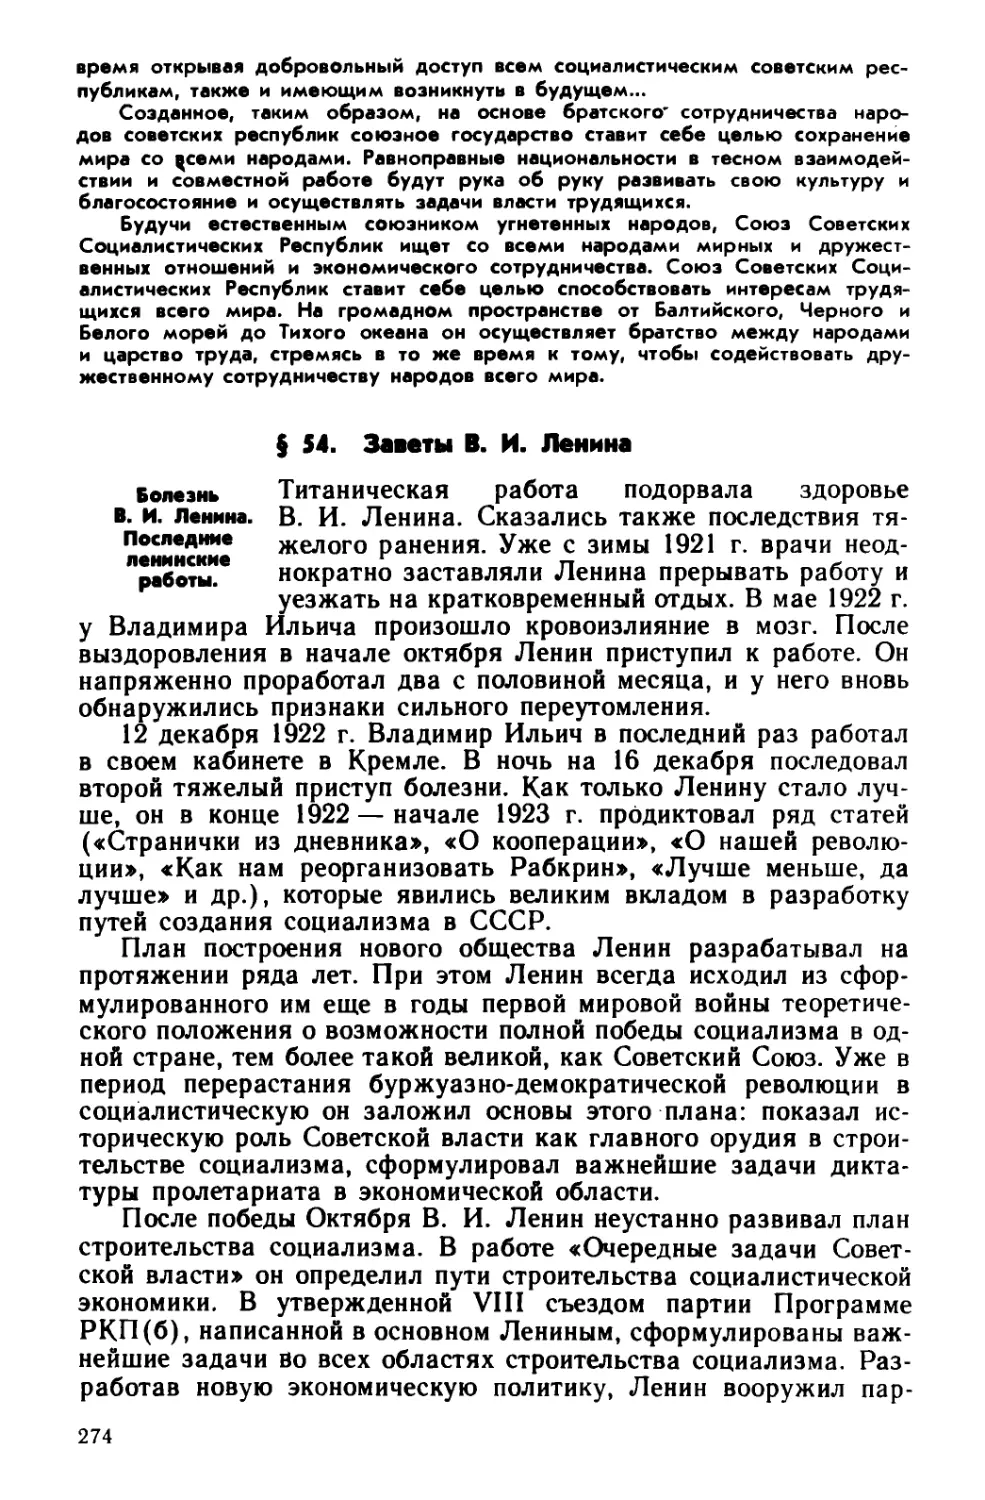 § 54. Заветы В. И. Ленина